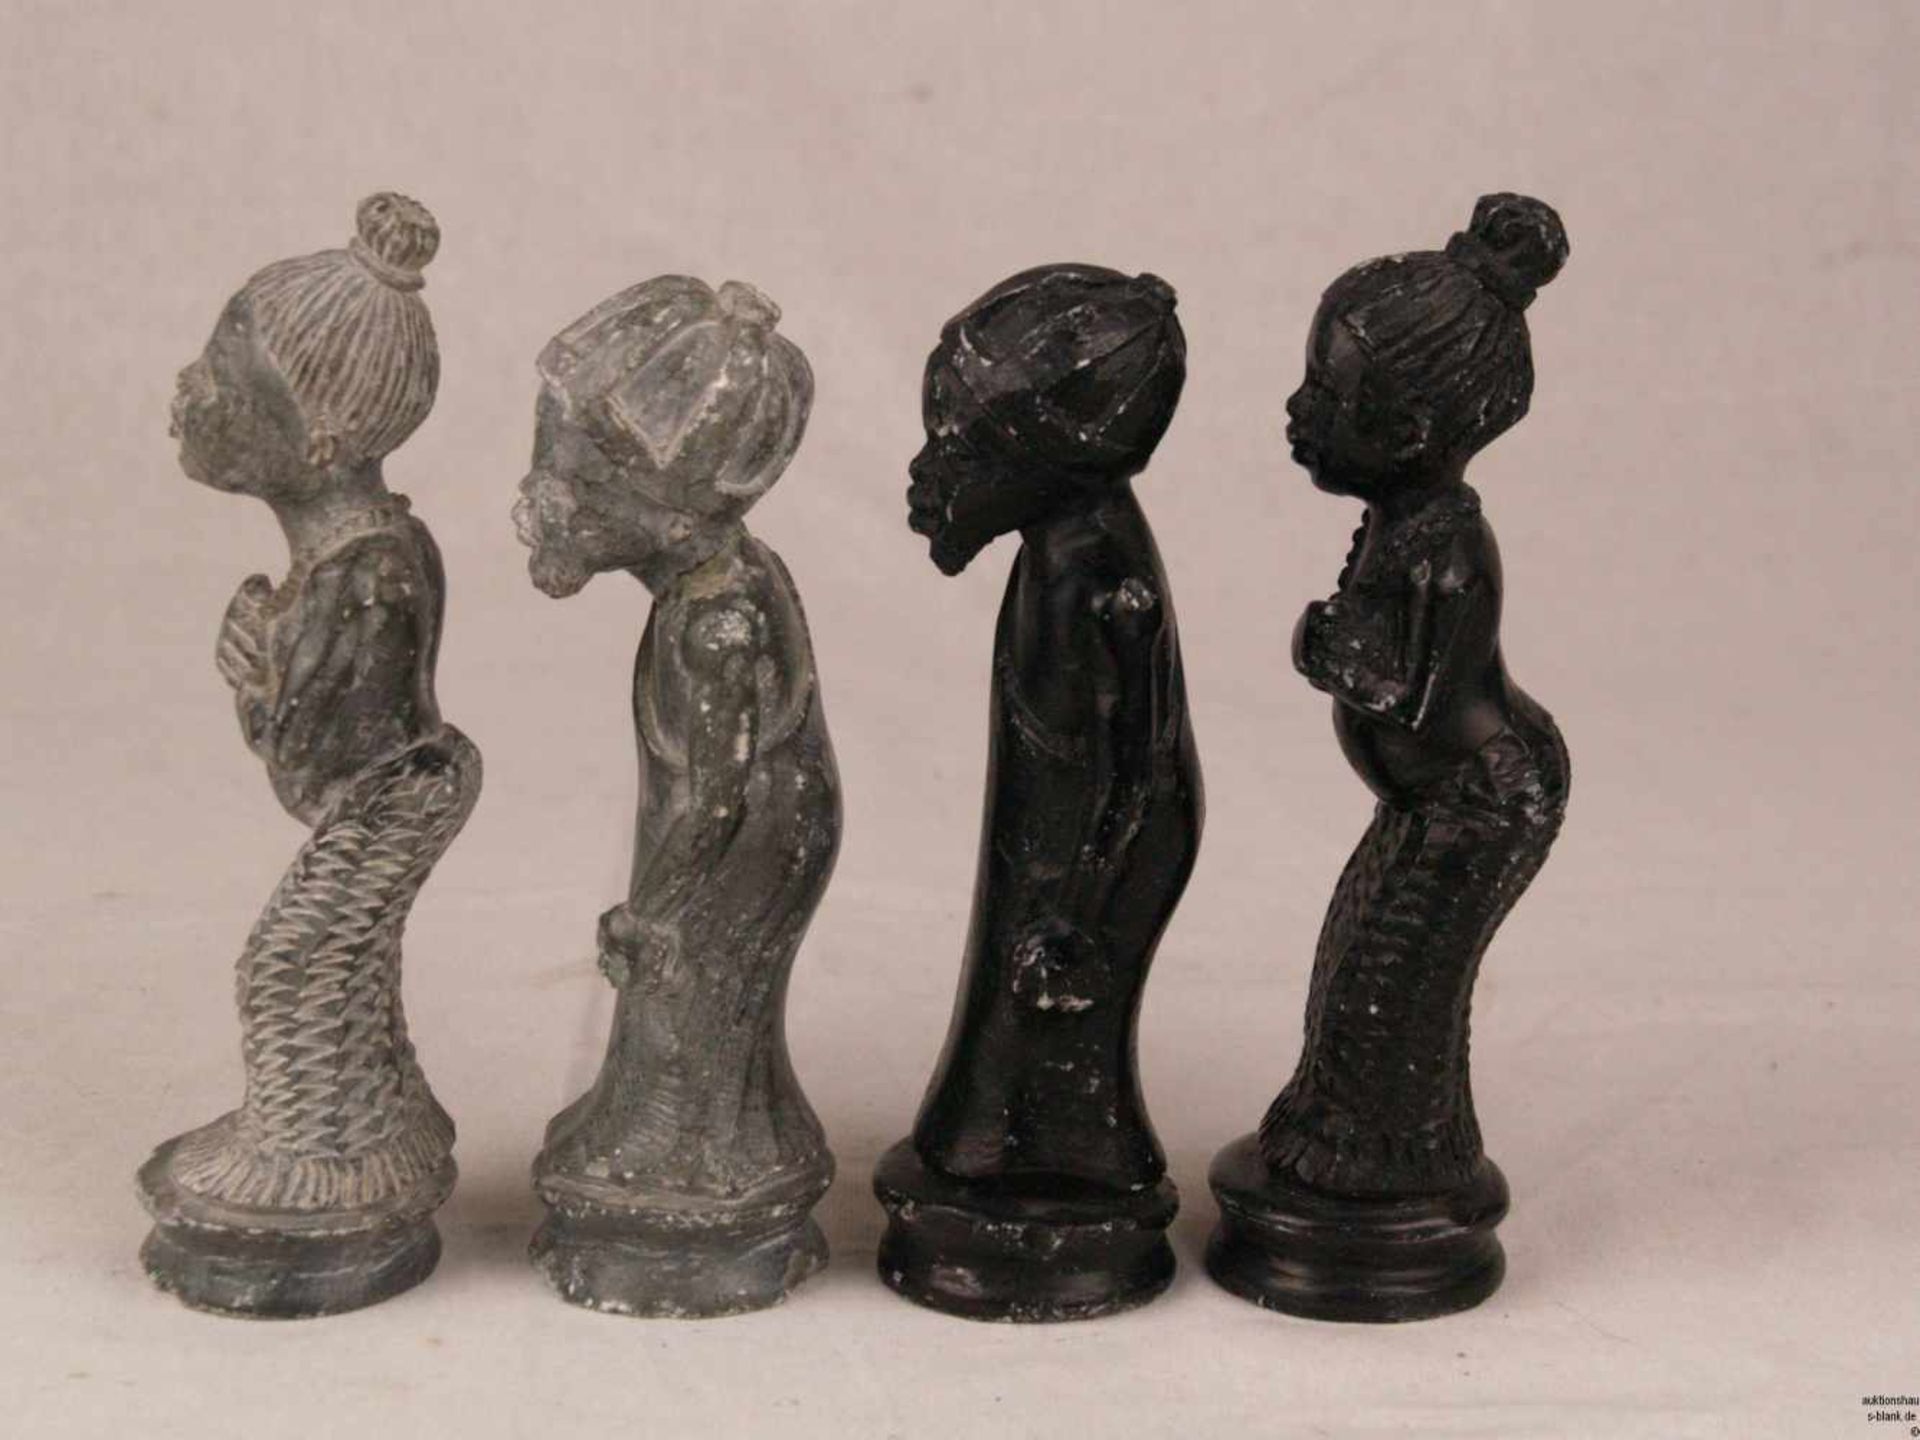 Schachfiguren - Speckstein, geschnitzt, schwarz- und grünfarben, vollständiger Schachfiguren-Set mit - Bild 3 aus 7